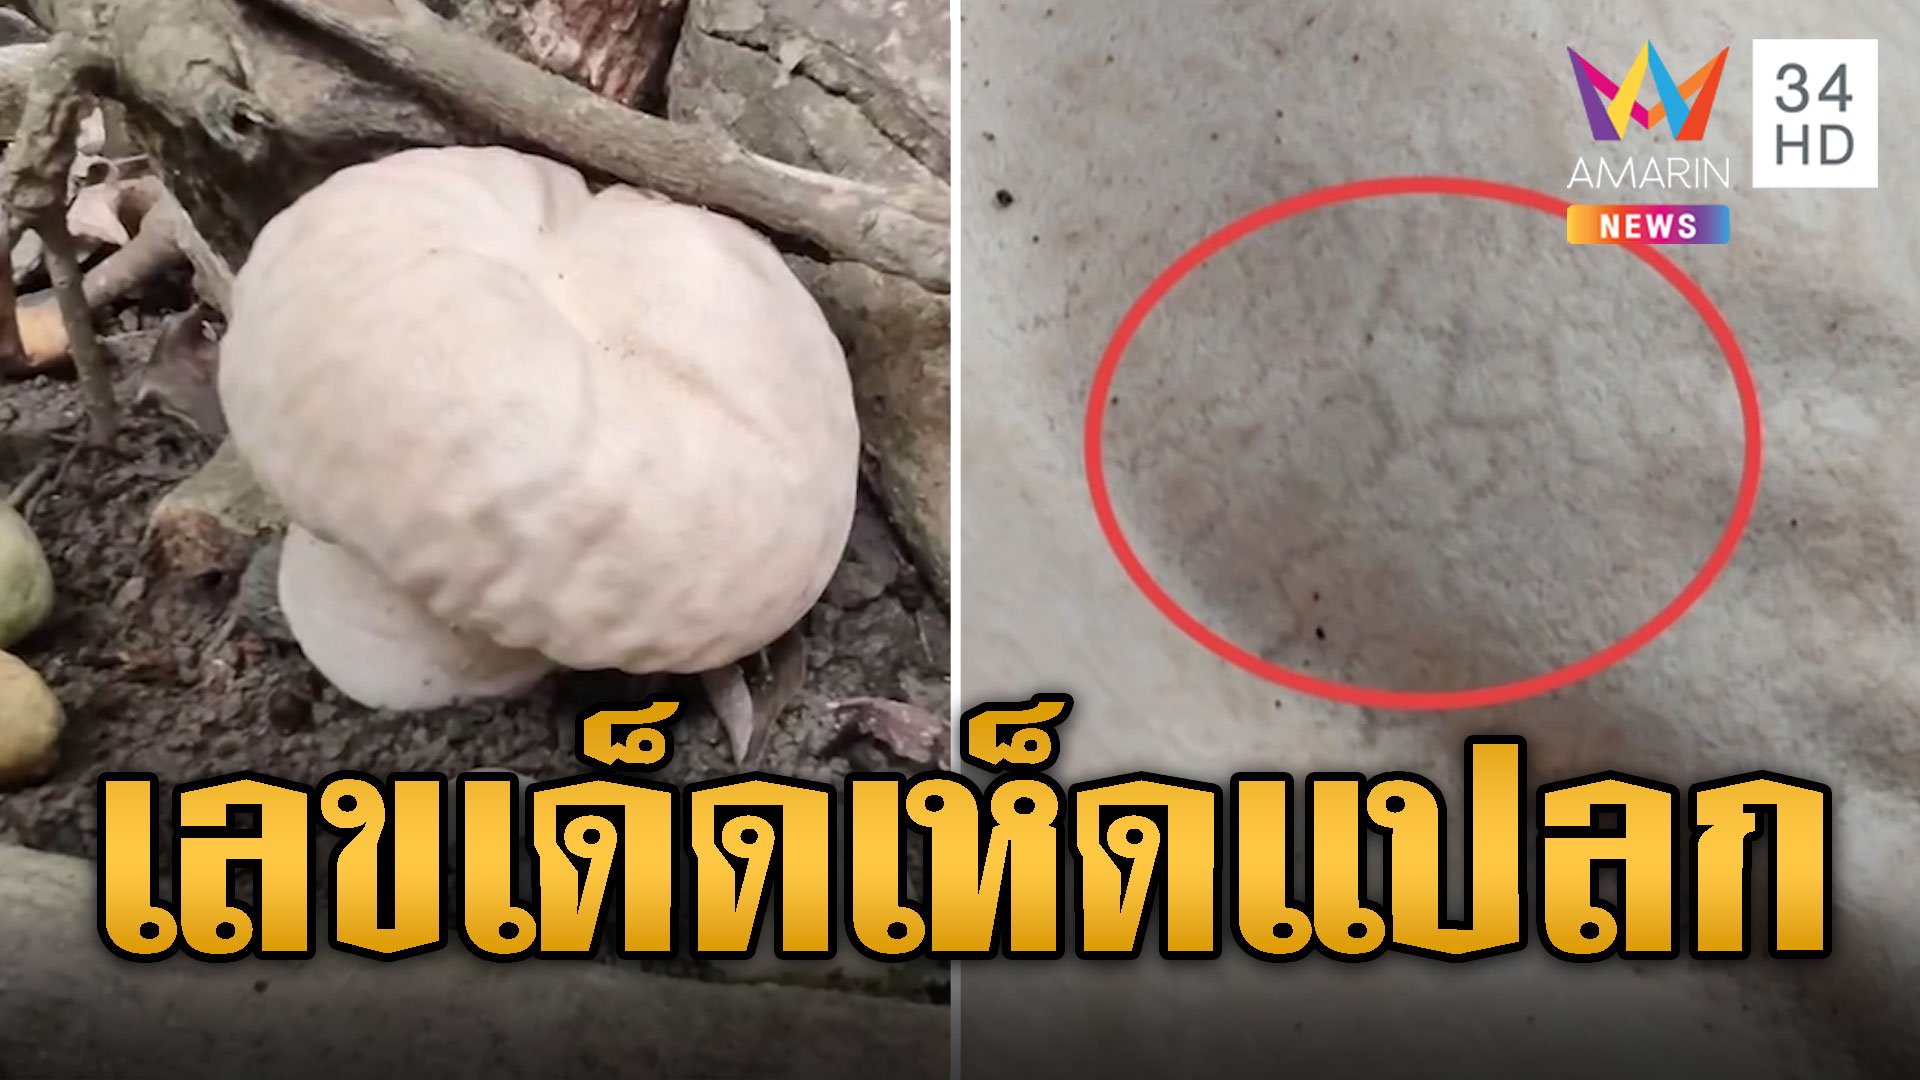 ฮือฮา! ชาวบ้านแห่ส่องเลขเด็ด เห็ดแปลก สัญชาติฝรั่งเกิดที่ไทย | ข่าวอรุณอมรินทร์ | 22 พ.ค. 67 | AMARIN TVHD34